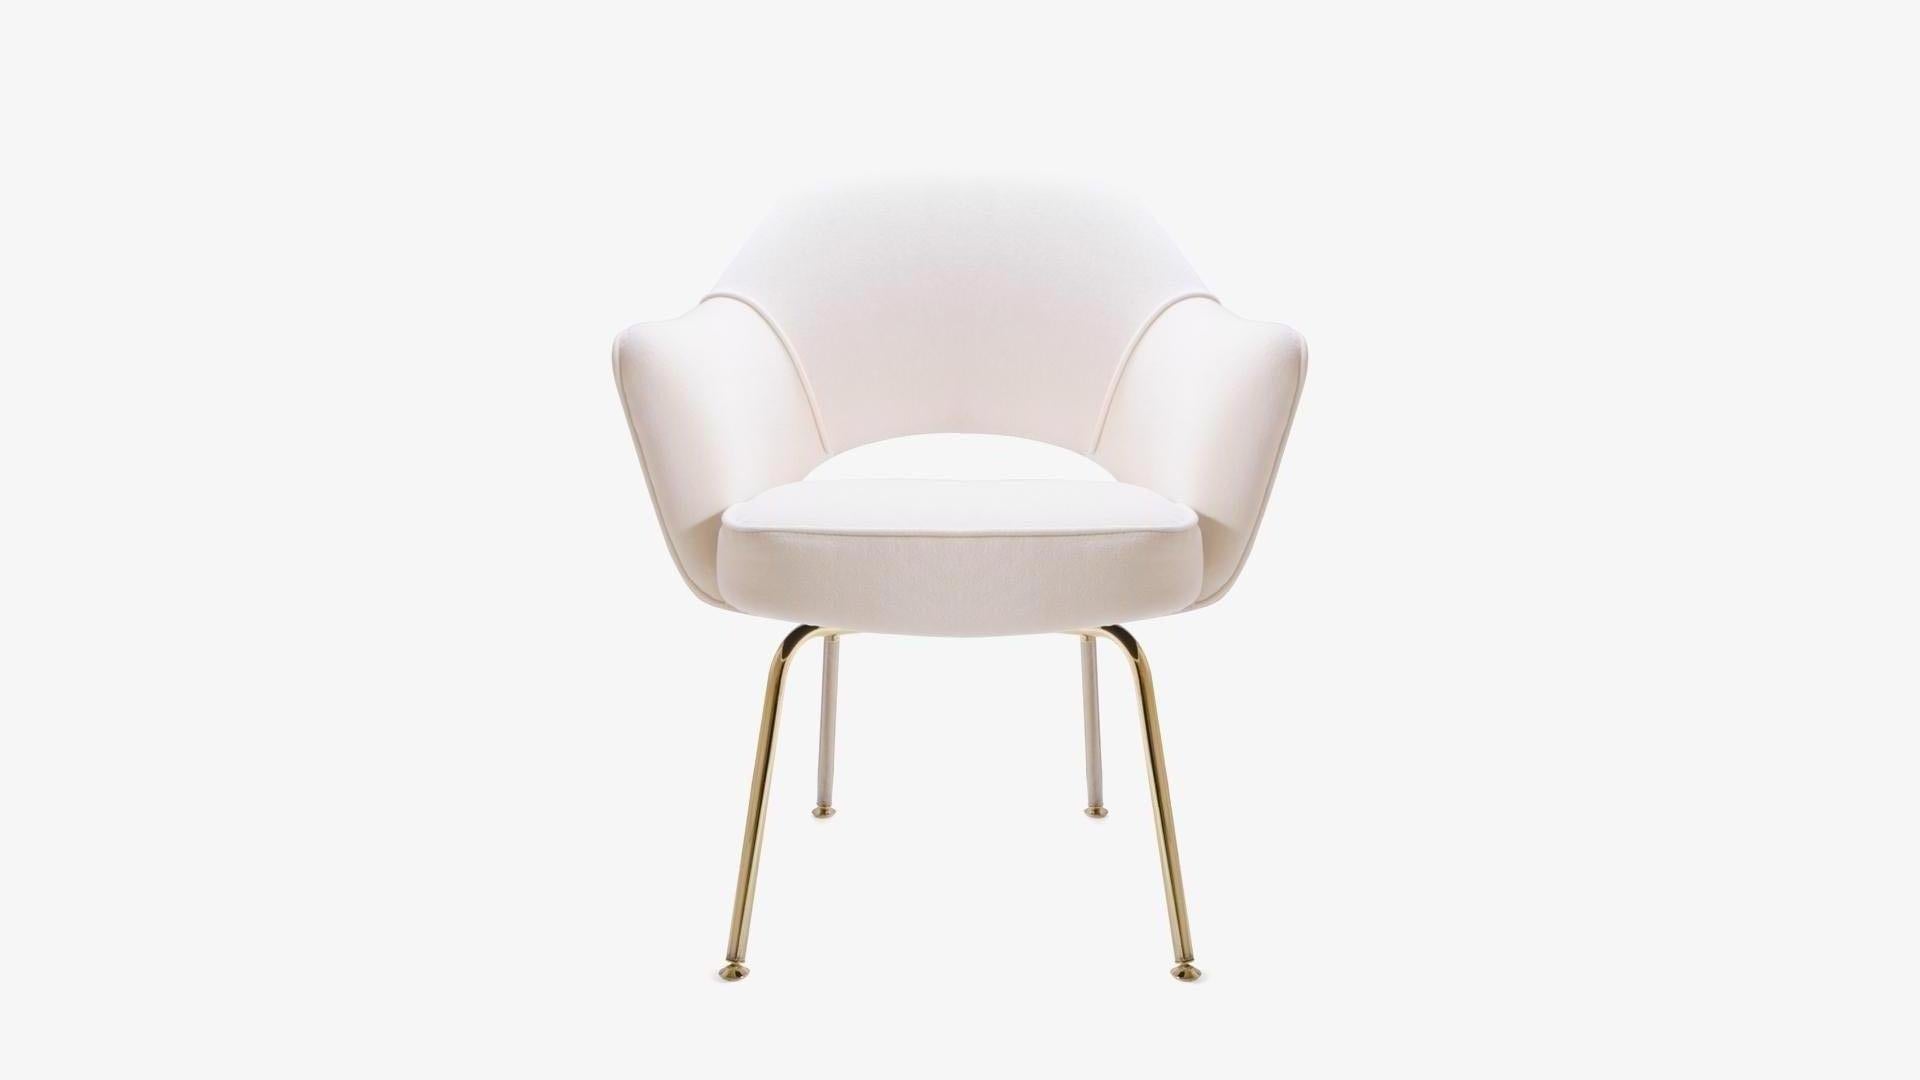 Authentischer Vintage-Sessel von Eero Saarinen. Vollständig restauriert mit einem Hauch von Gold.
Wir restaurieren seit Jahren Saarinen Chefsessel in allen erdenklichen Stoffen, direkt in unserem eigenen Arbeitsraum. Bitte erkundigen Sie sich nach